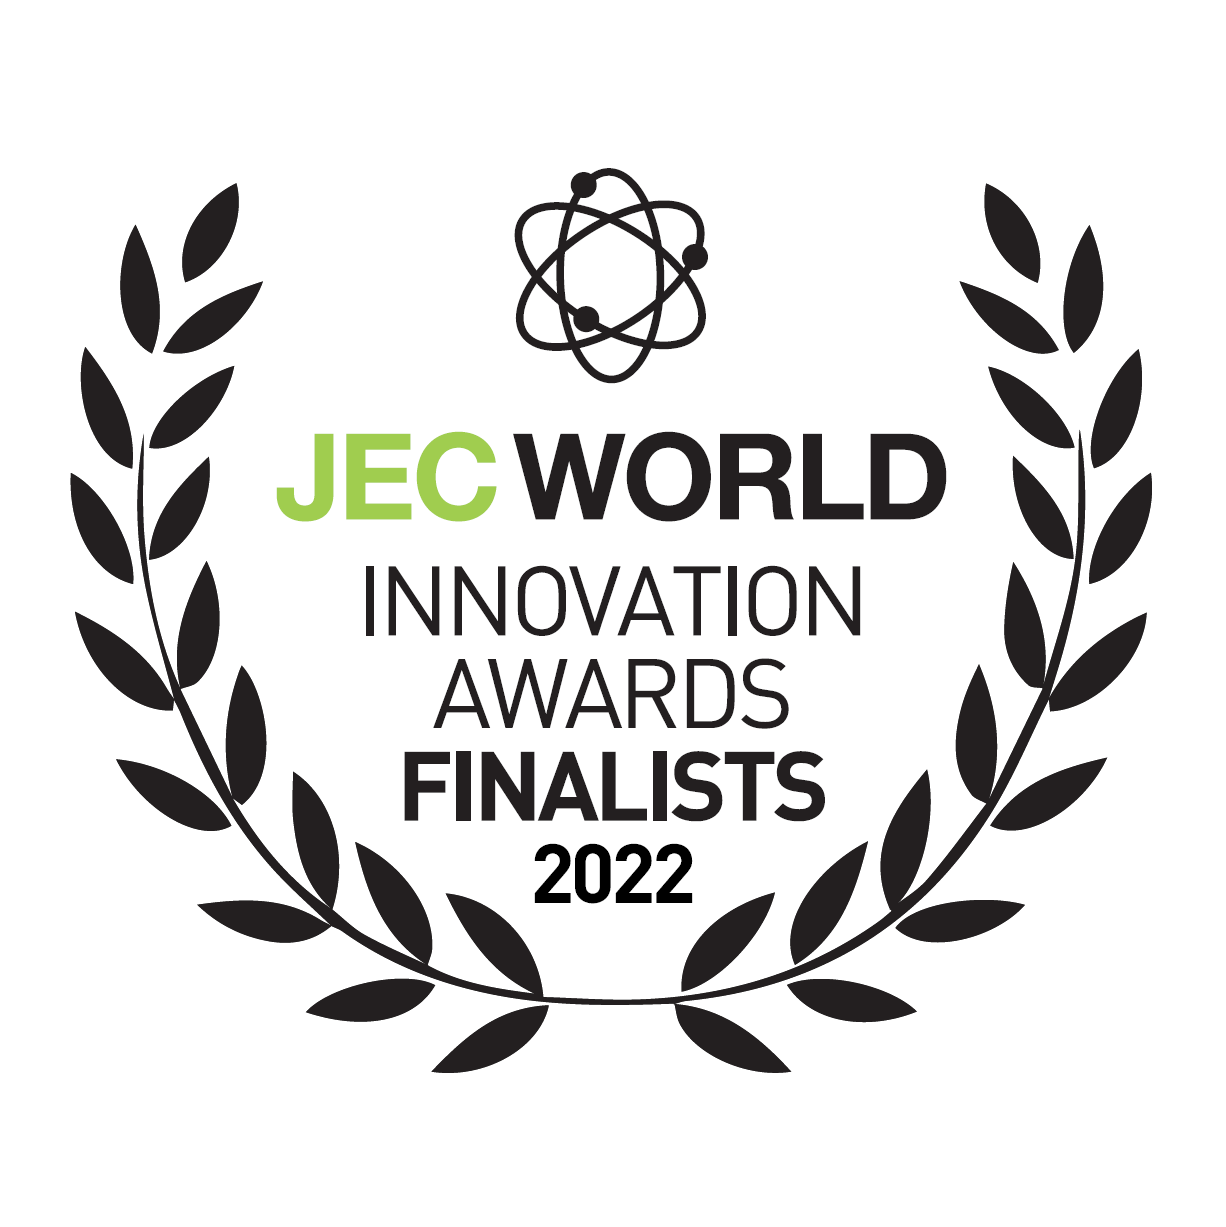 JEC WORLD Innovation Awards Finalists 2022